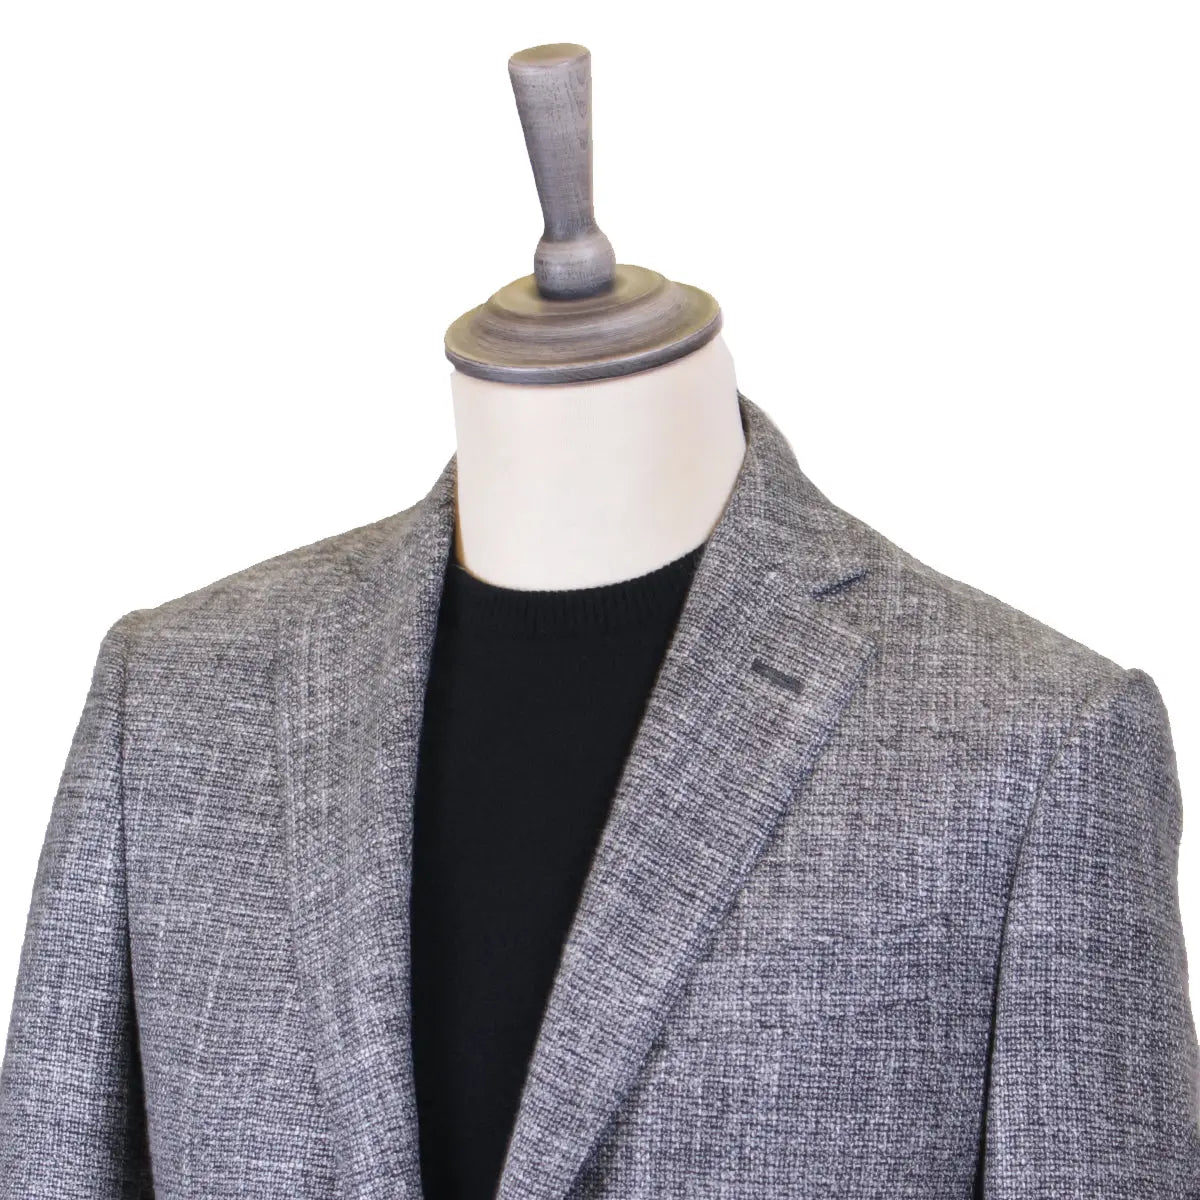 Charcoal Wool, Linen, &amp; Sisal Weave Jacket  Robert Old   